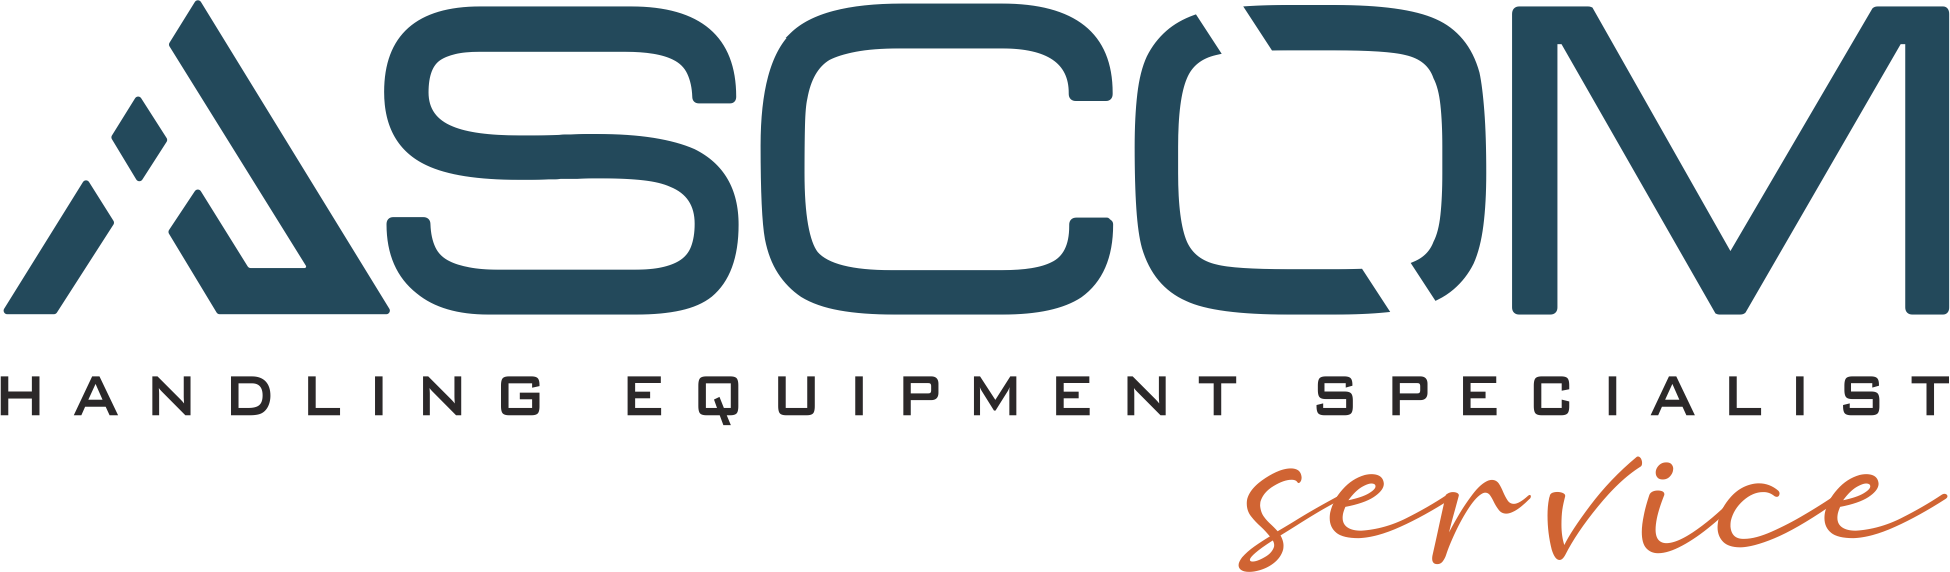 logo Ascom Service